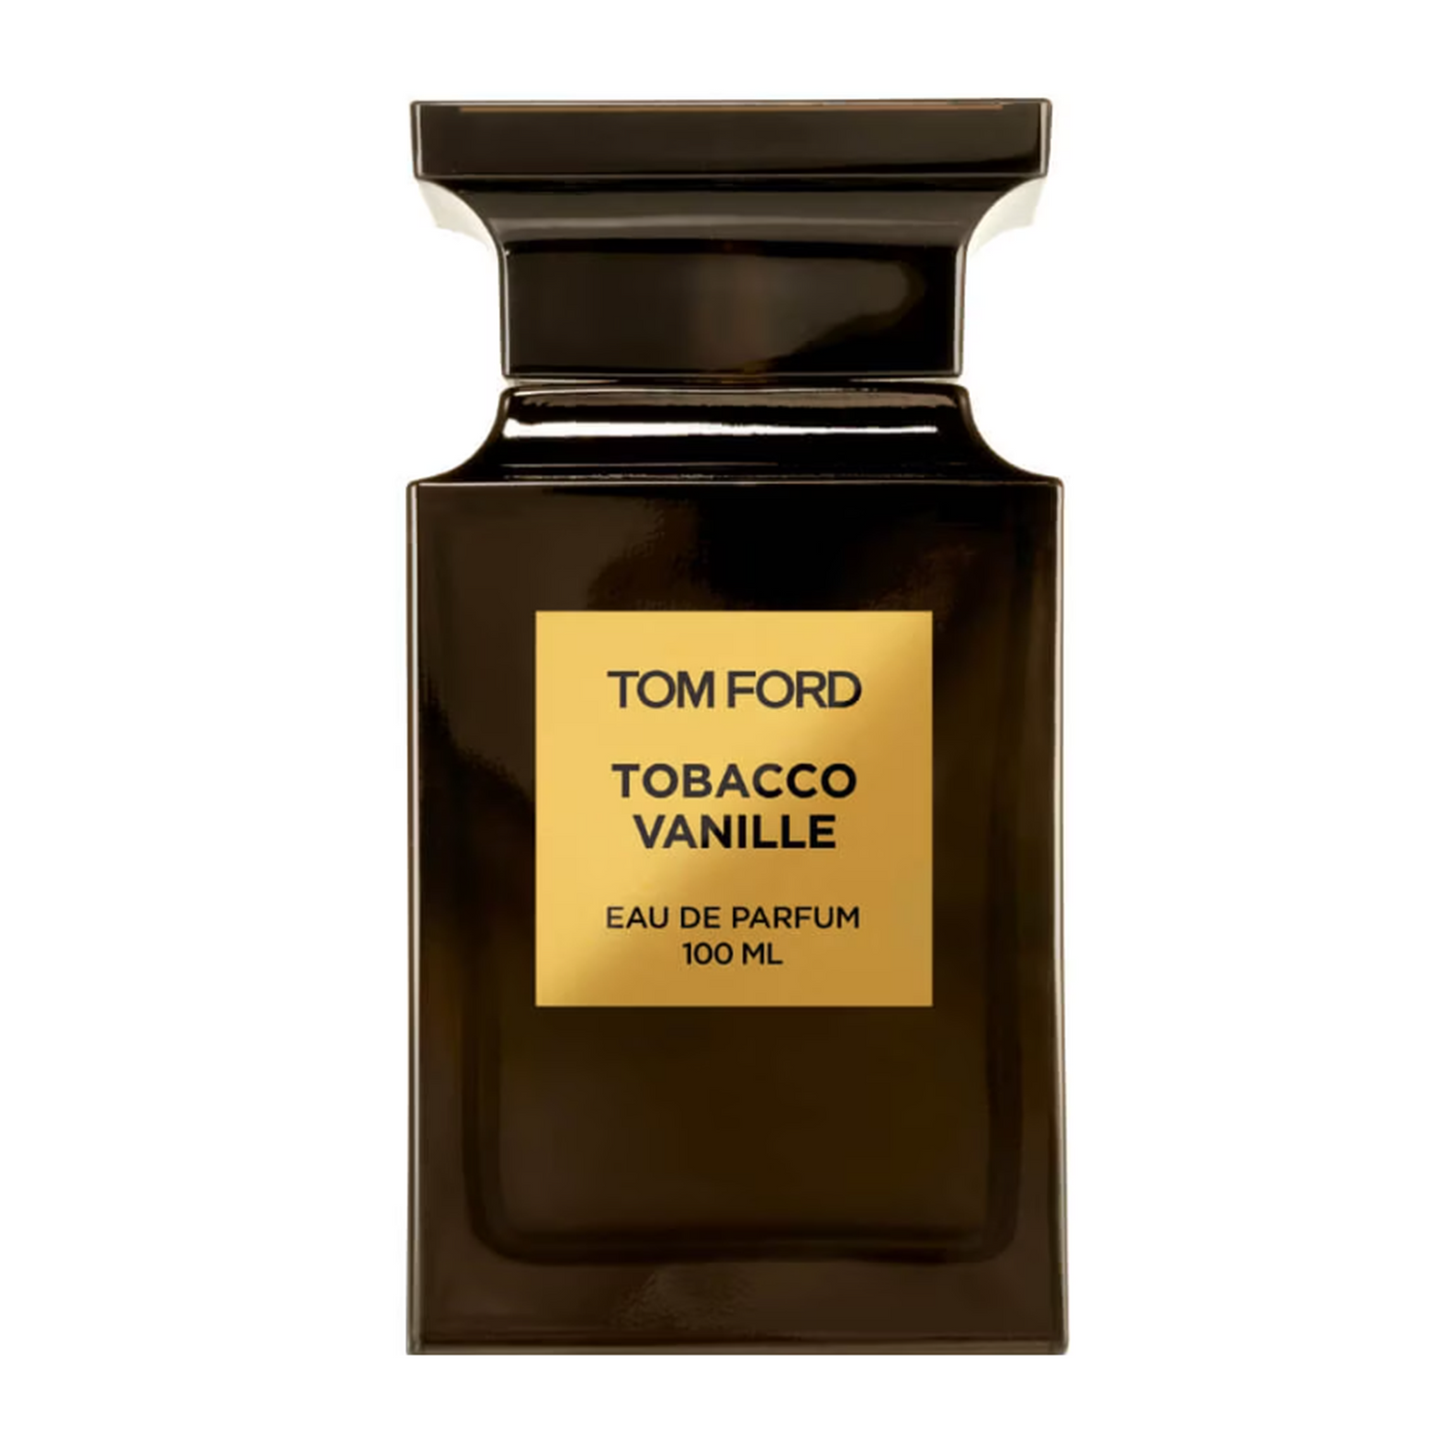 TOM FORD - Tobacco Vanille Duftprobe Parfümprobe Abfüllung